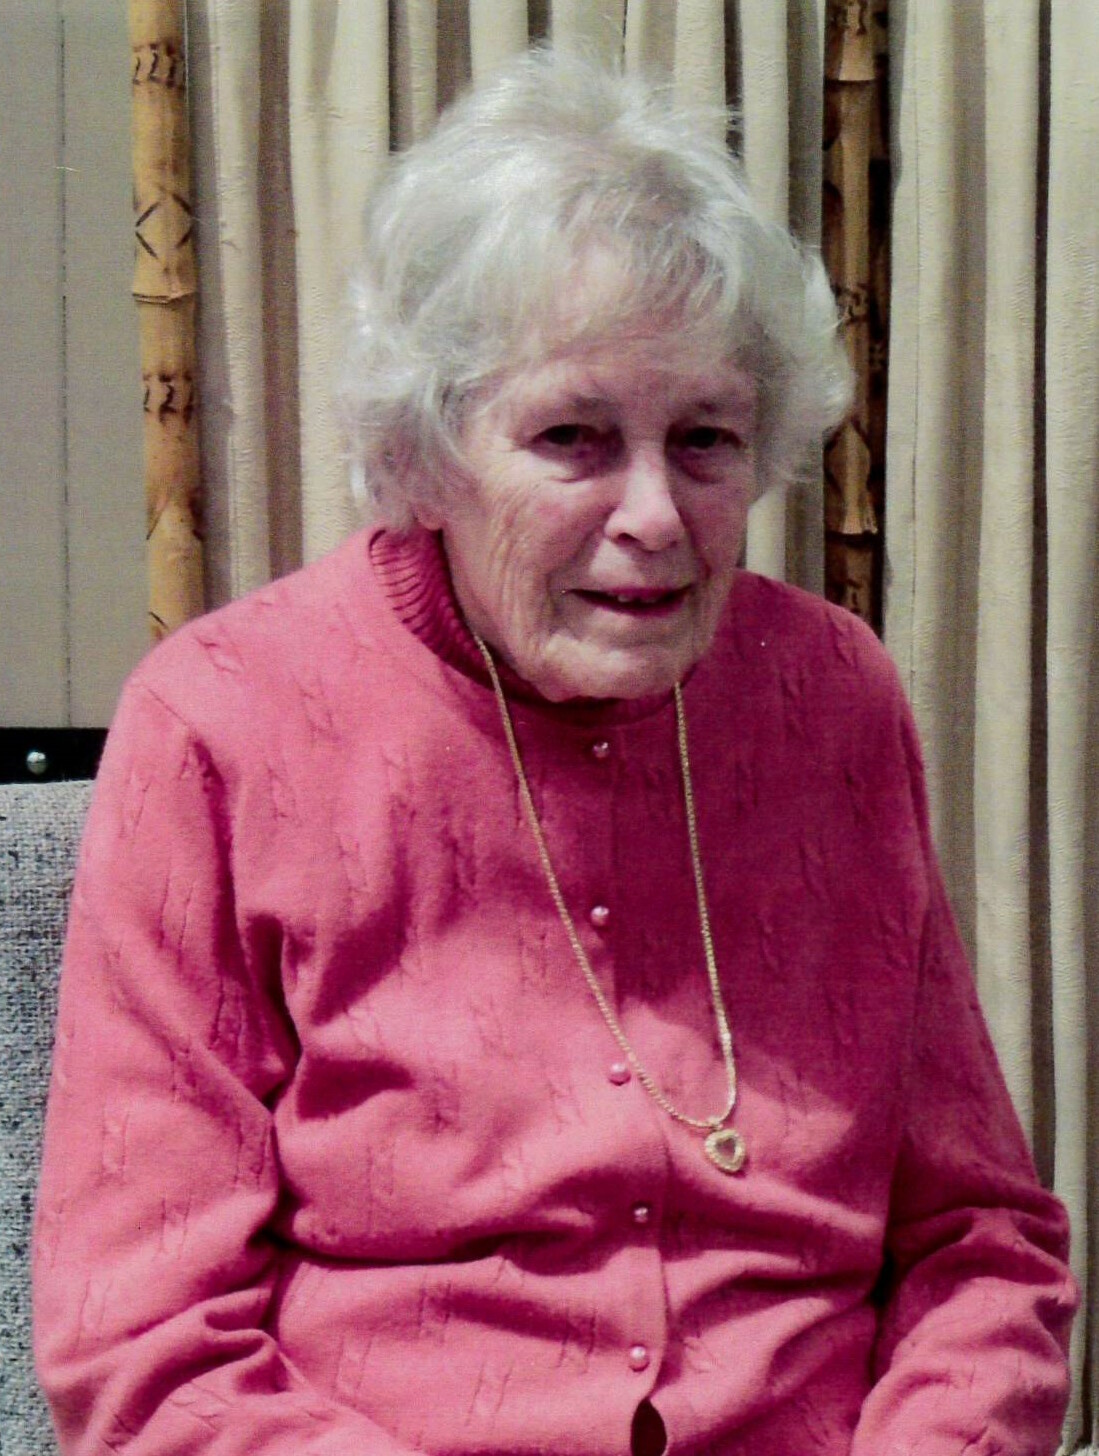 Doris Stewart